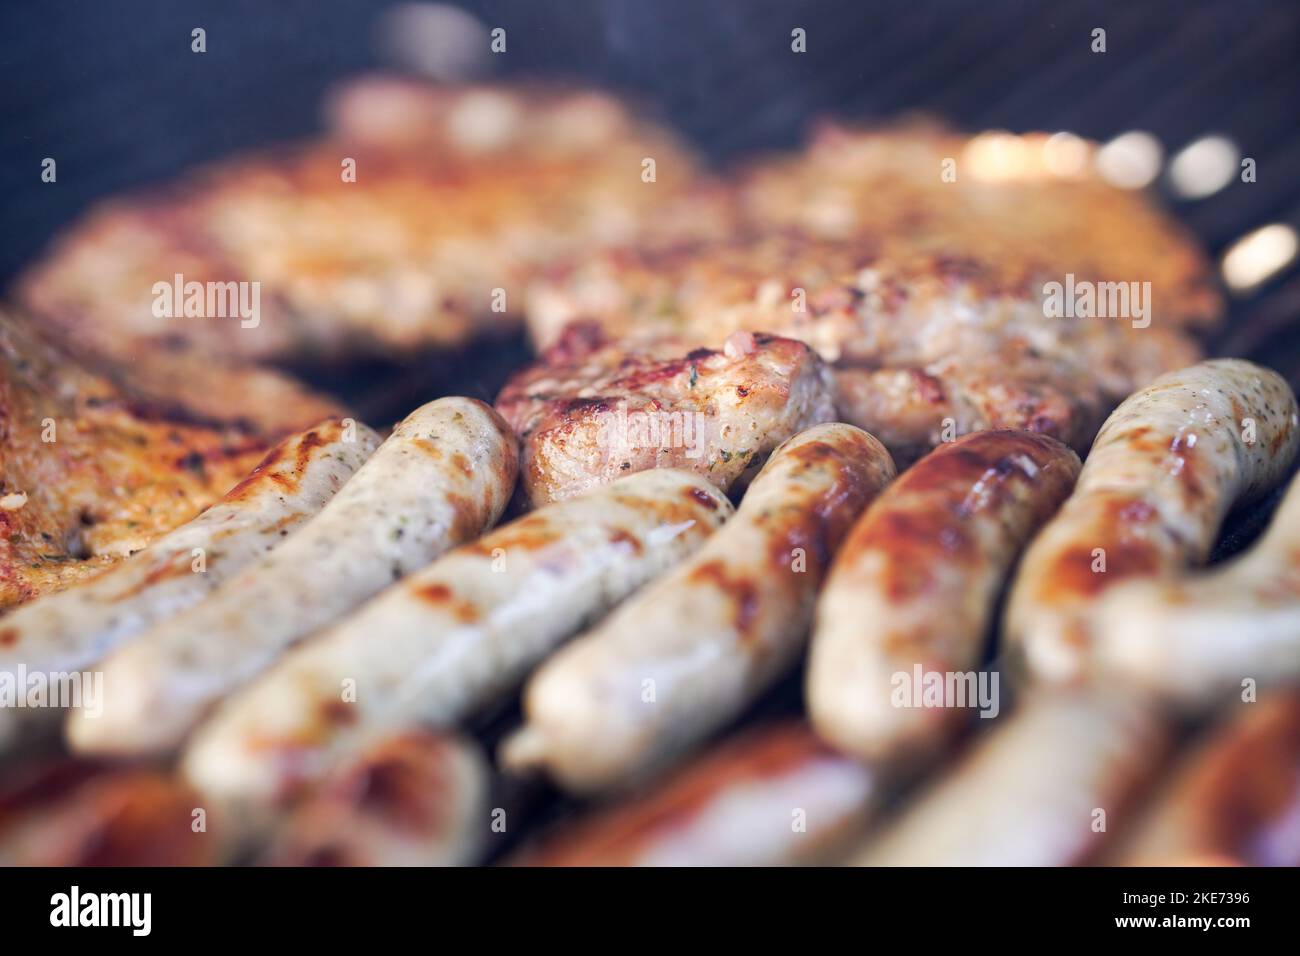 Bratwurst und Fleisch vom Grill - Grilled sausage and meat Stock Photo